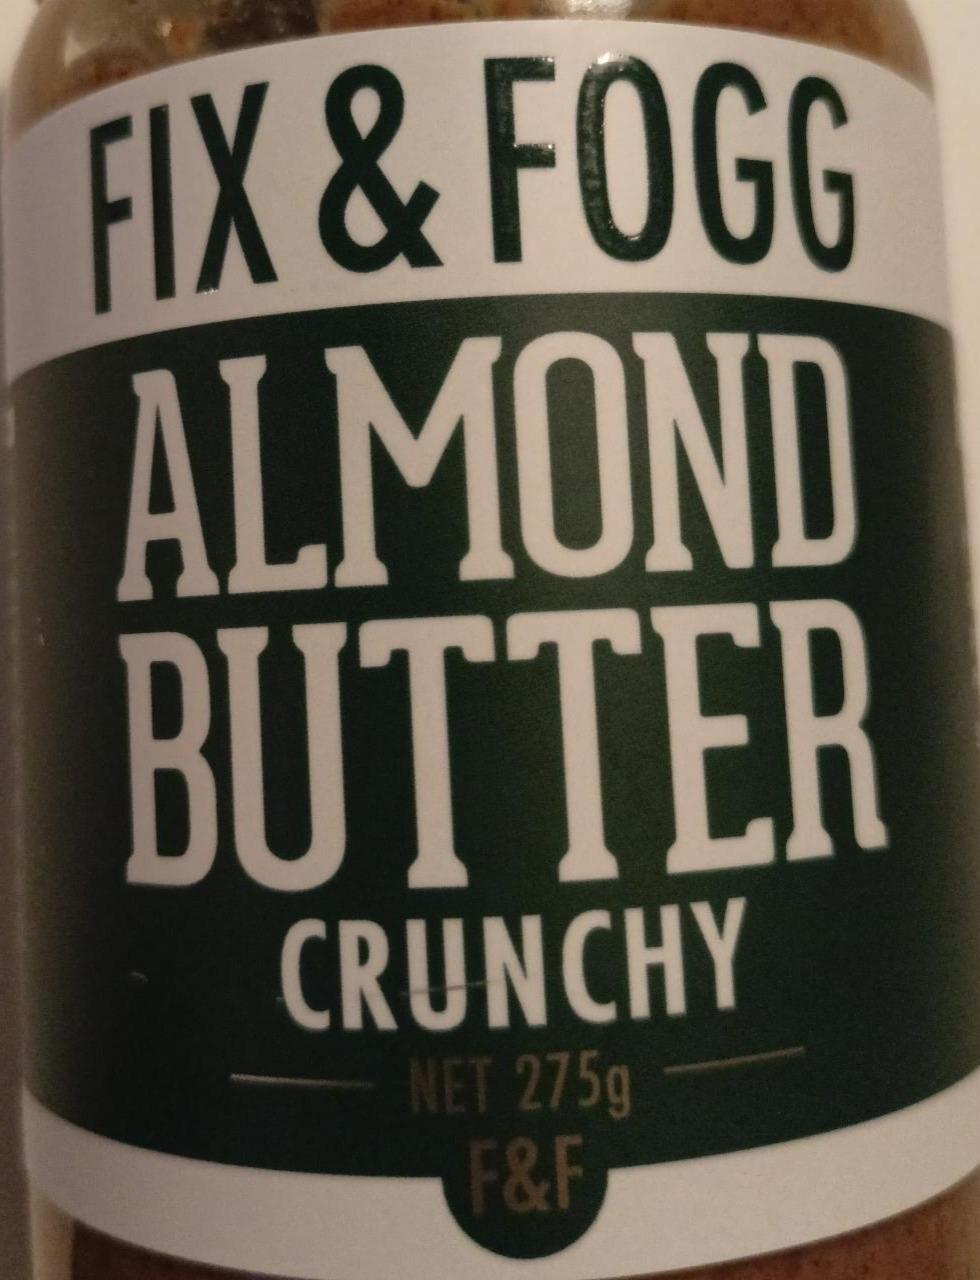 Fotografie - Almond butter crunchy Fix & Fogg